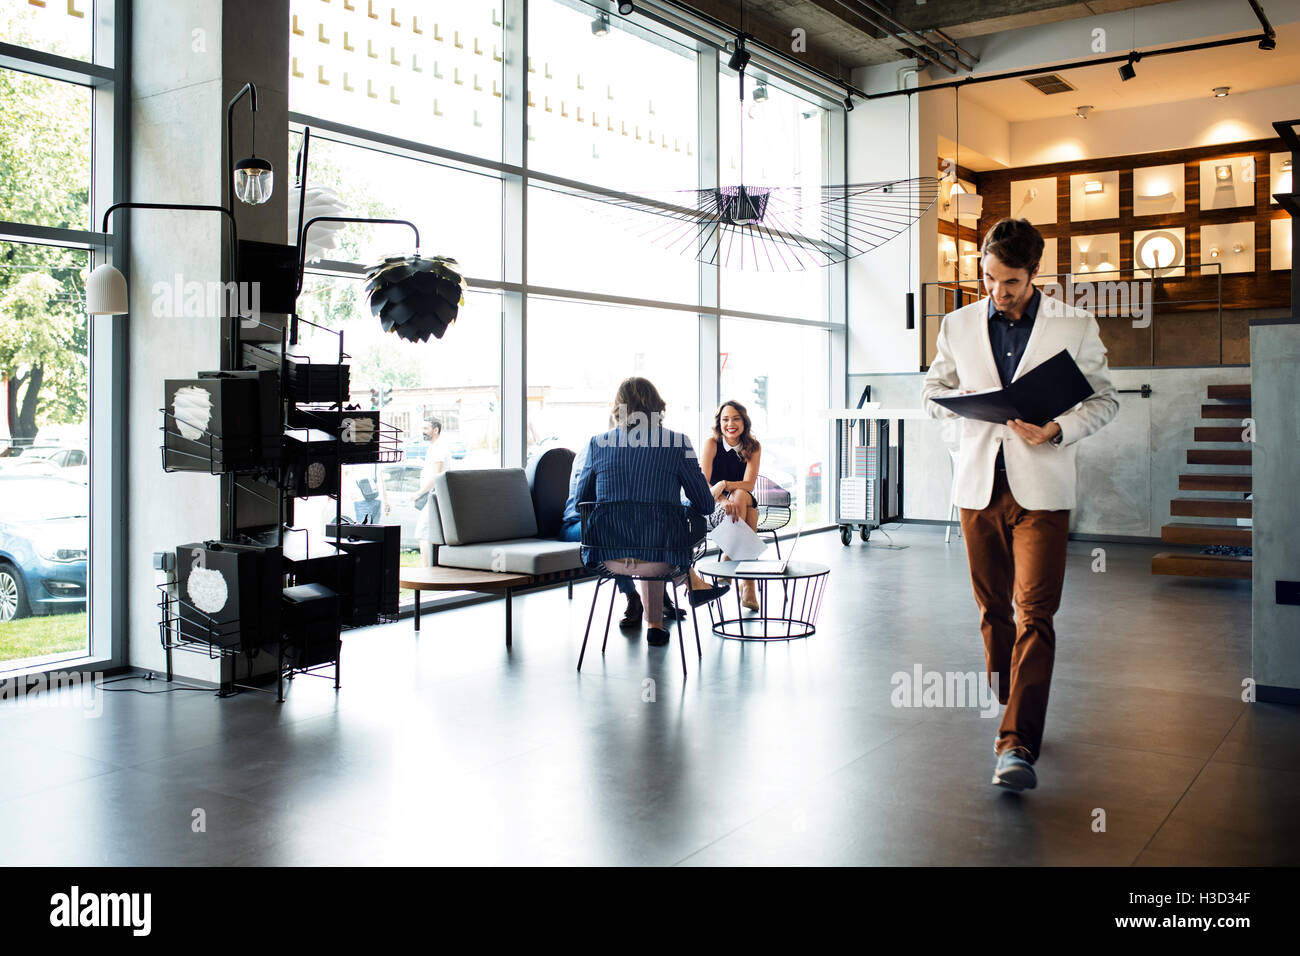 Geschäftsmann, die Datei zu lesen, während im Büro von Kolleginnen und Kollegen im Hintergrund laufen Stockfoto